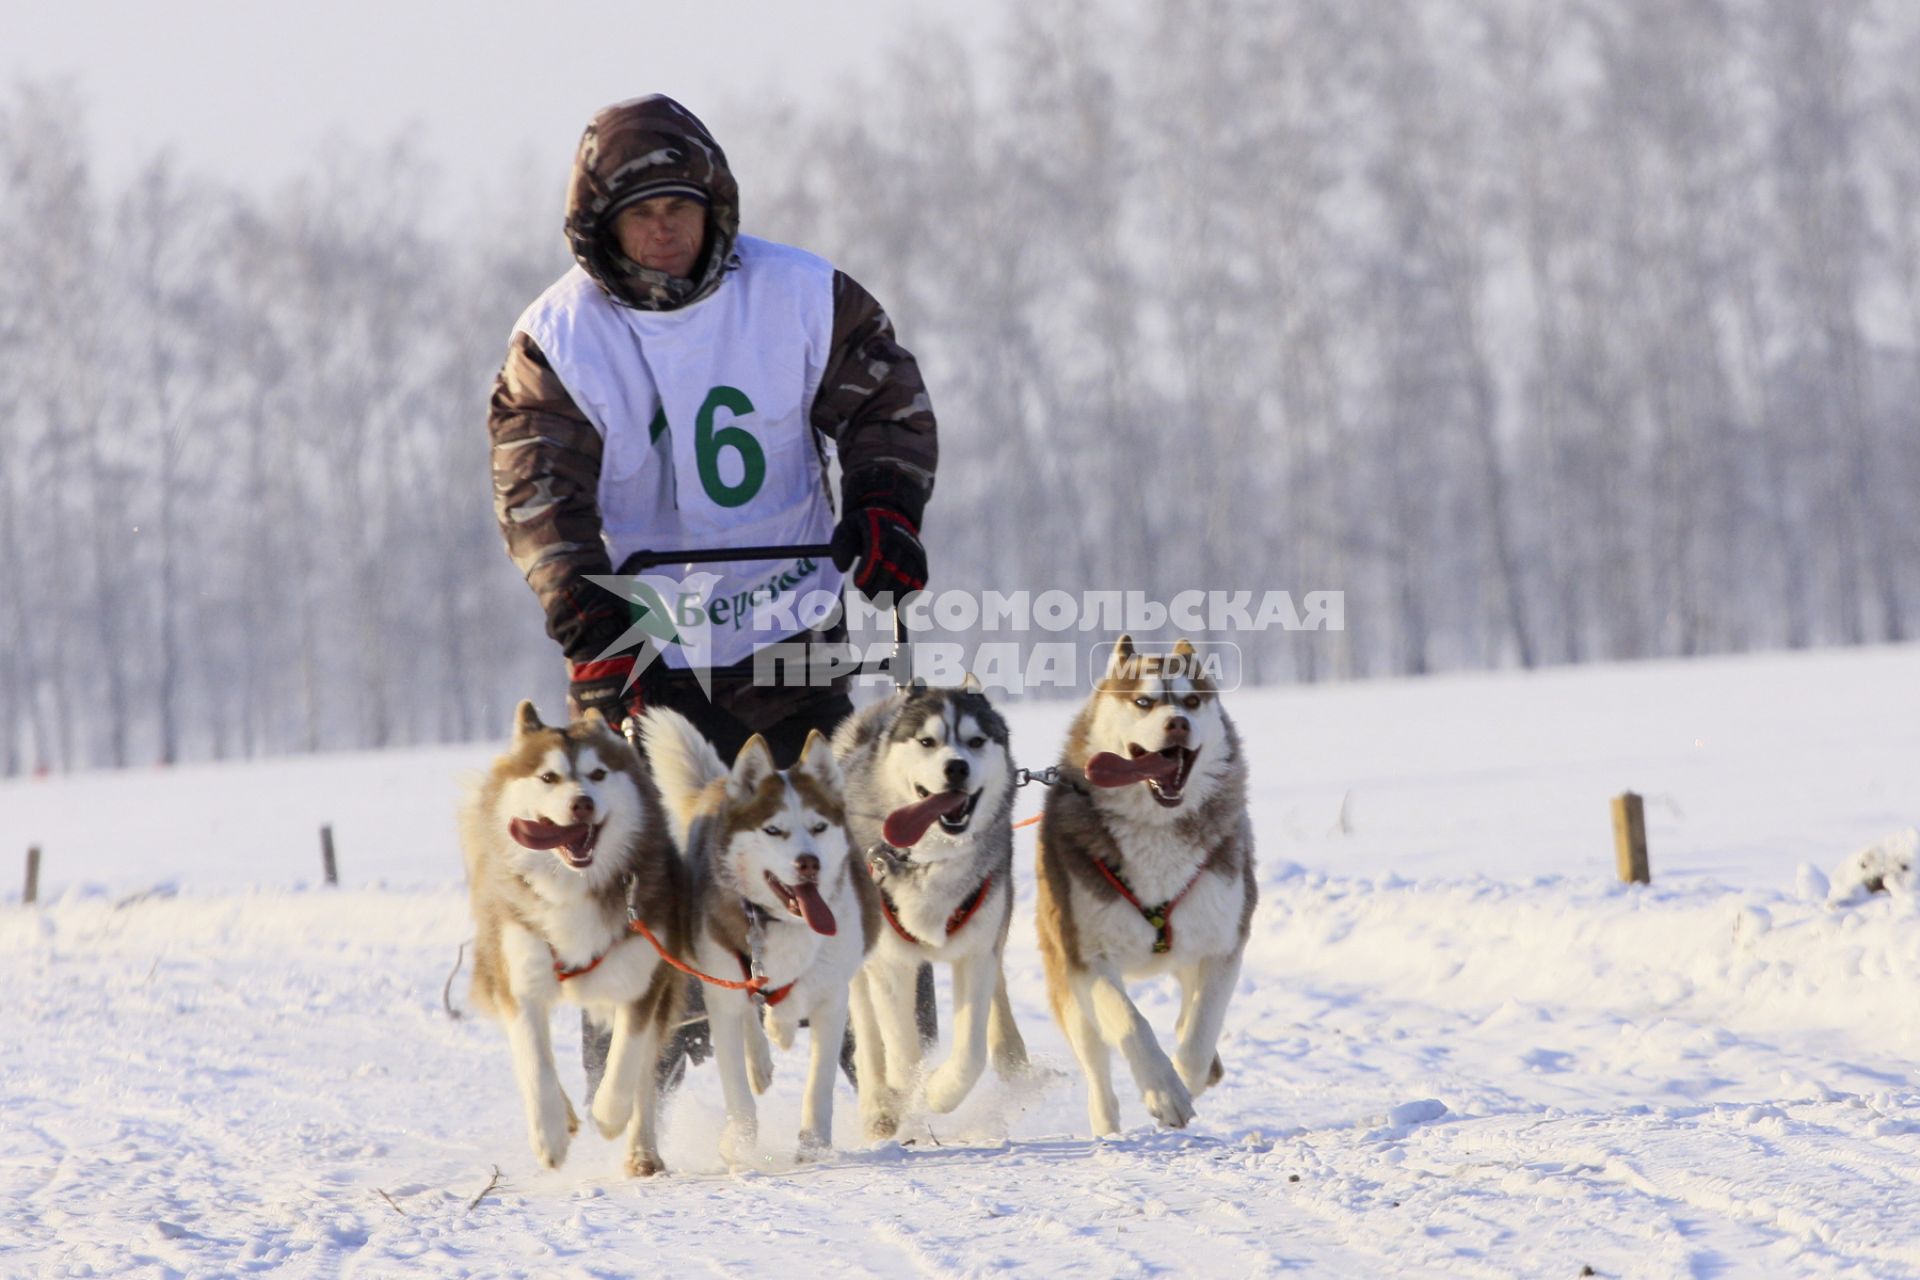 Гонки на собачьих упряжках в Барнауле. На снимке: саночник с собачьей упряжкой и собак породы хаски.